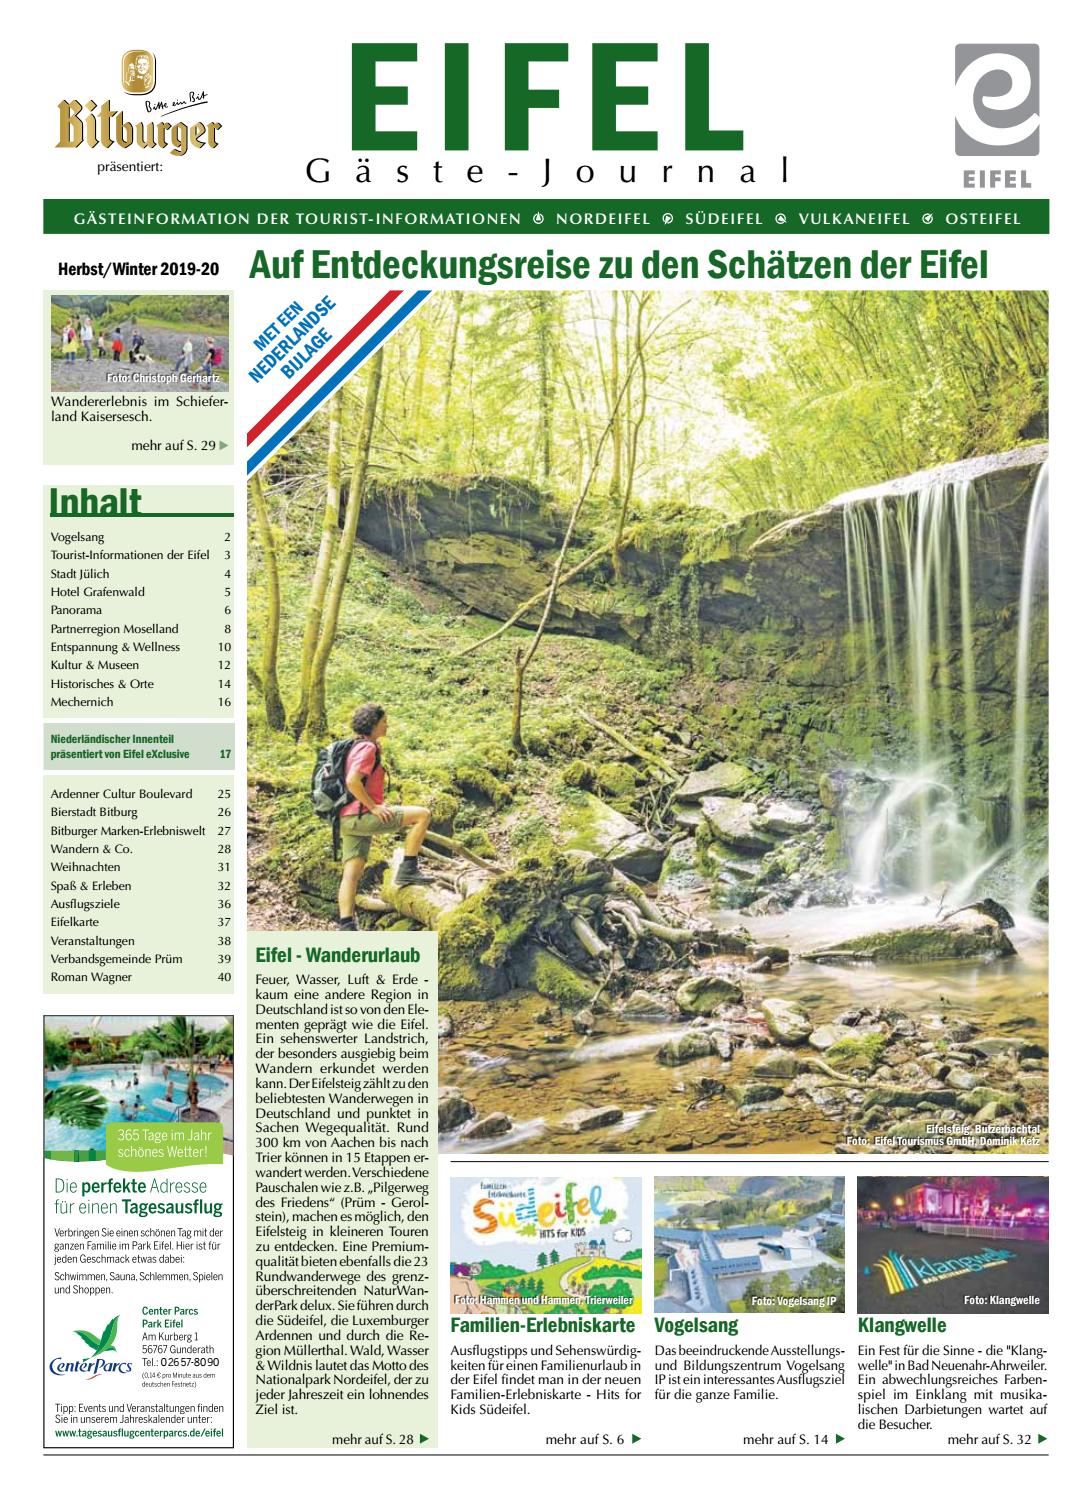 Terrasse Schön Gestalten Genial Eifel Gäste Journal Herbst Winter 2019 2020 by tourist